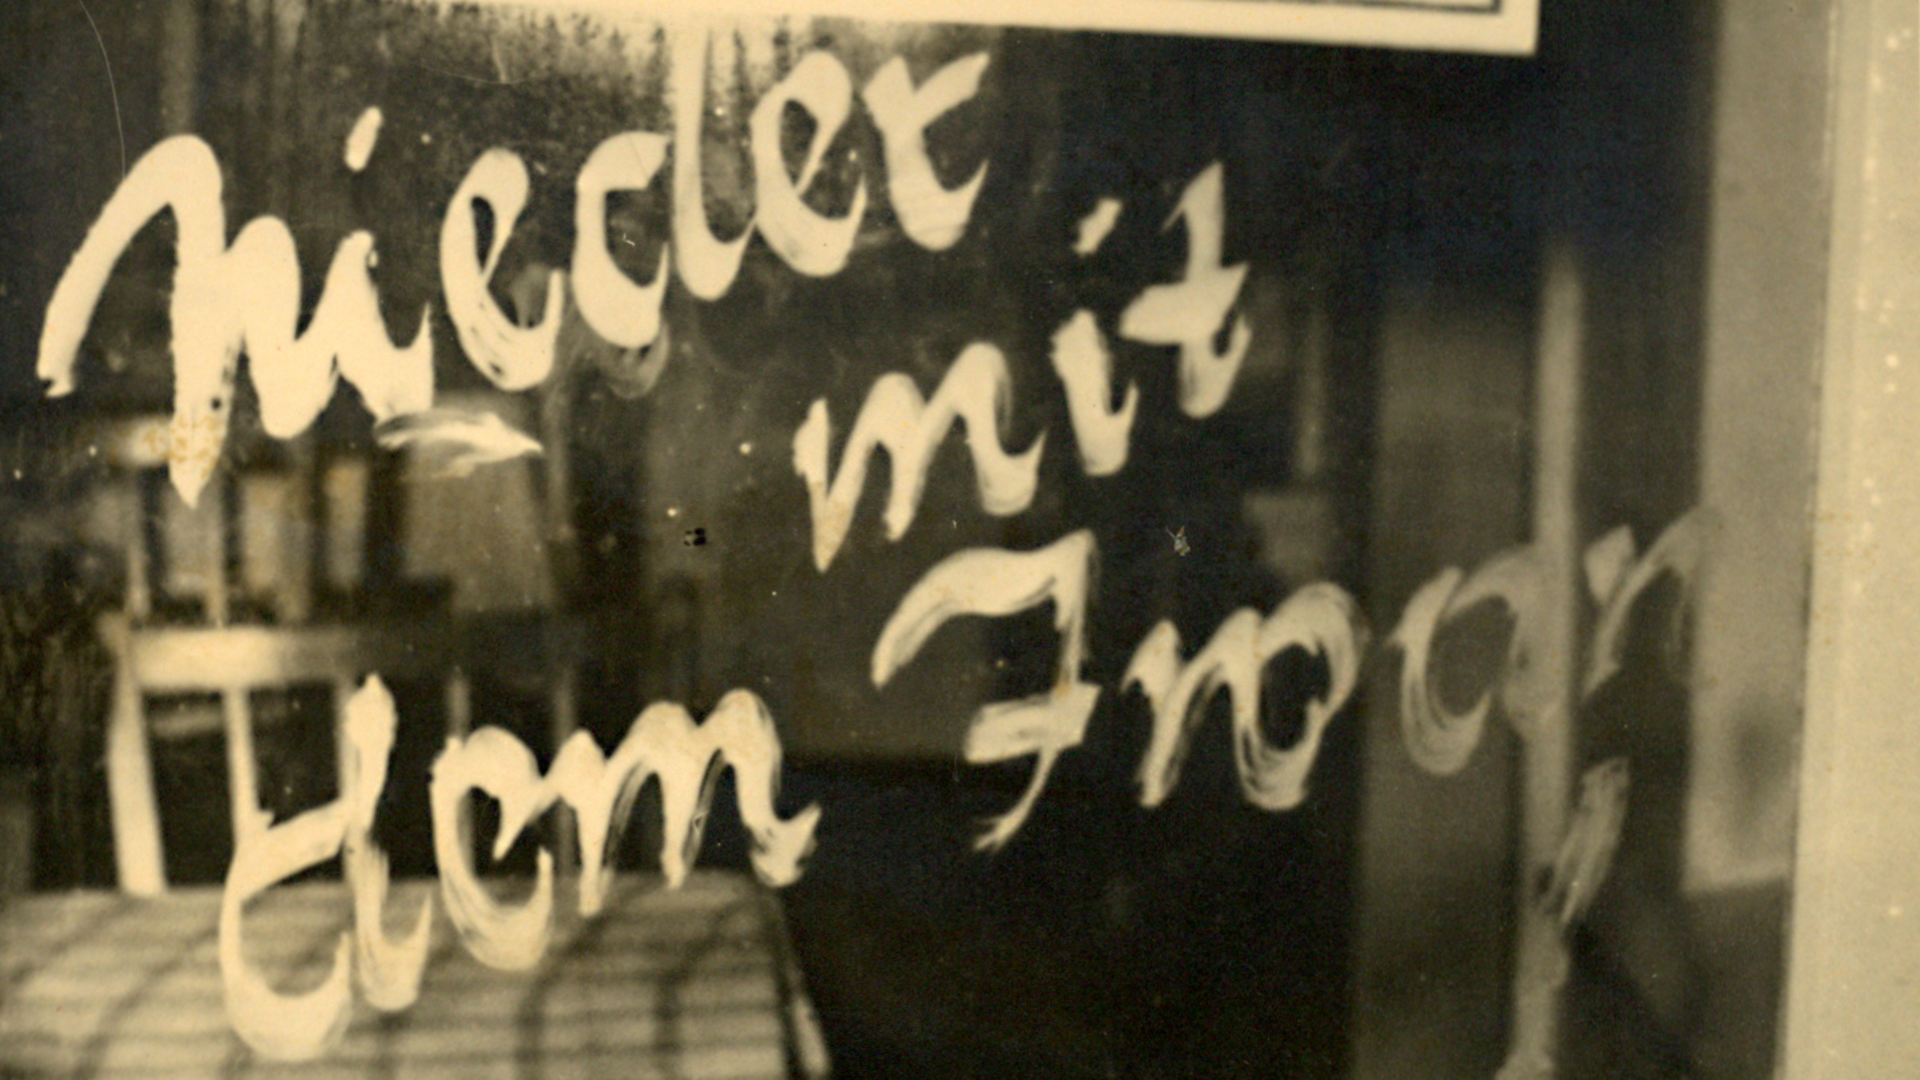 Eine Losung mit dem Schriftzug 'Nieder mit dem Iwan' auf einer in der Tür verbauten Fensterscheibe.